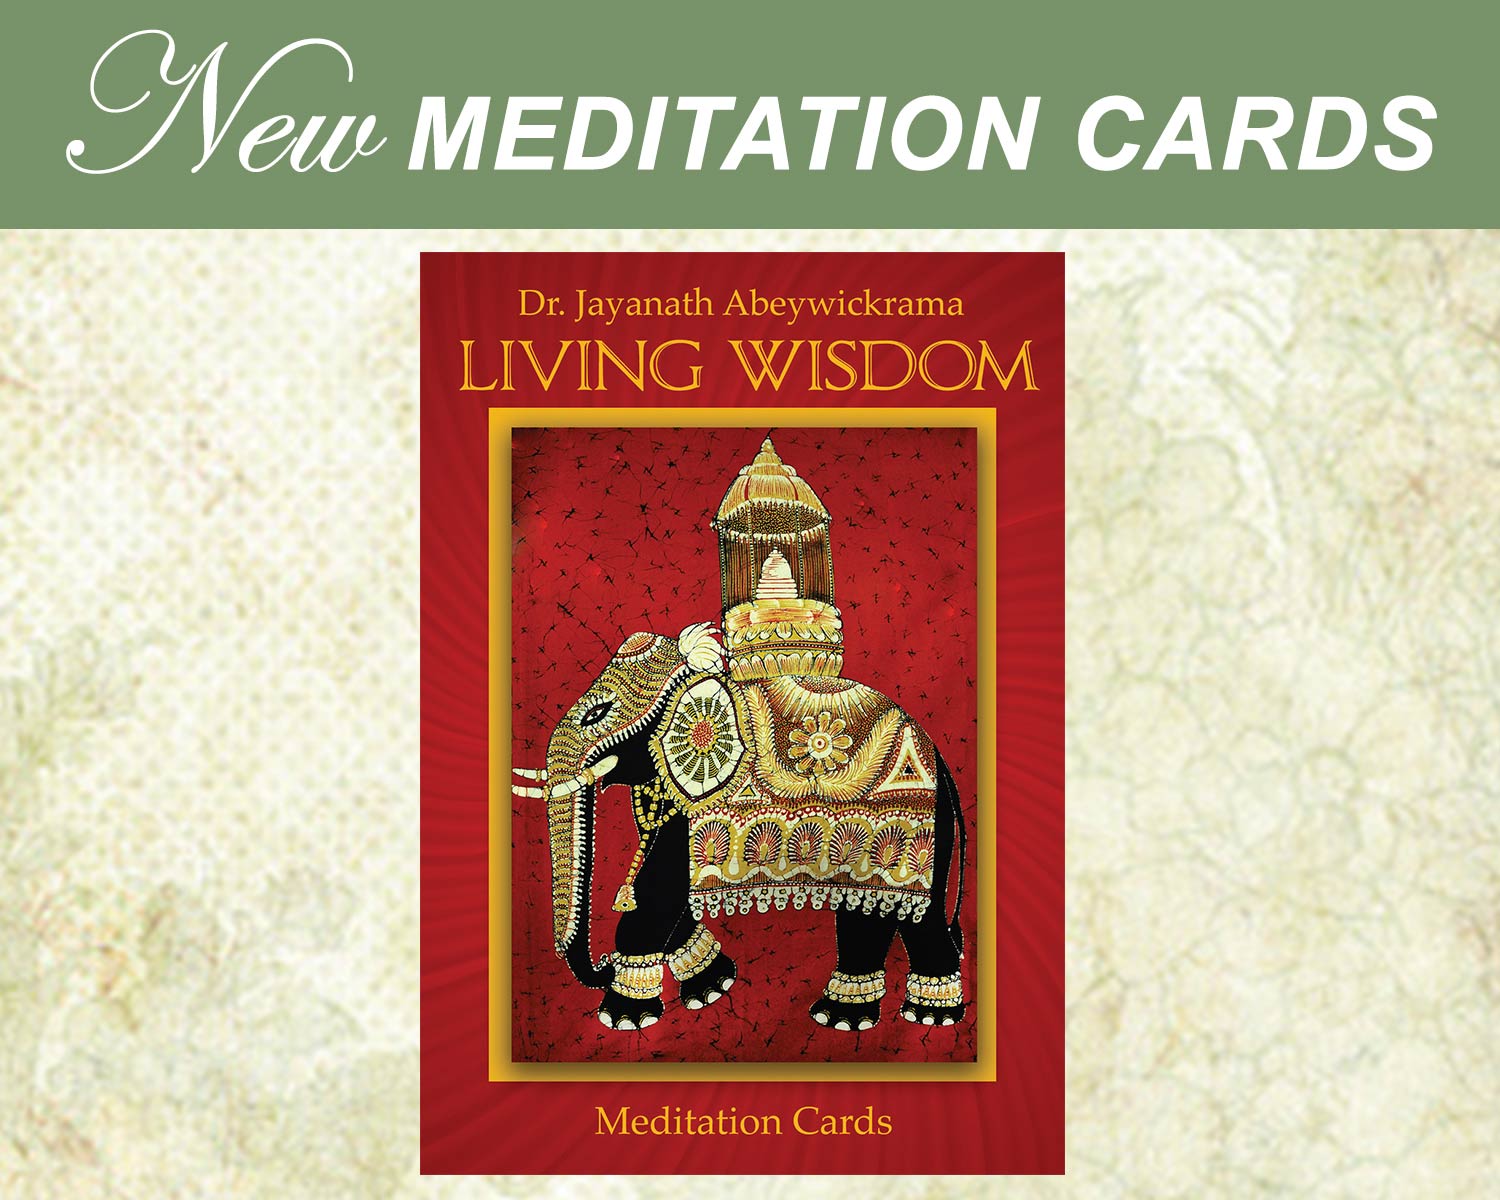 New Meditation Cards